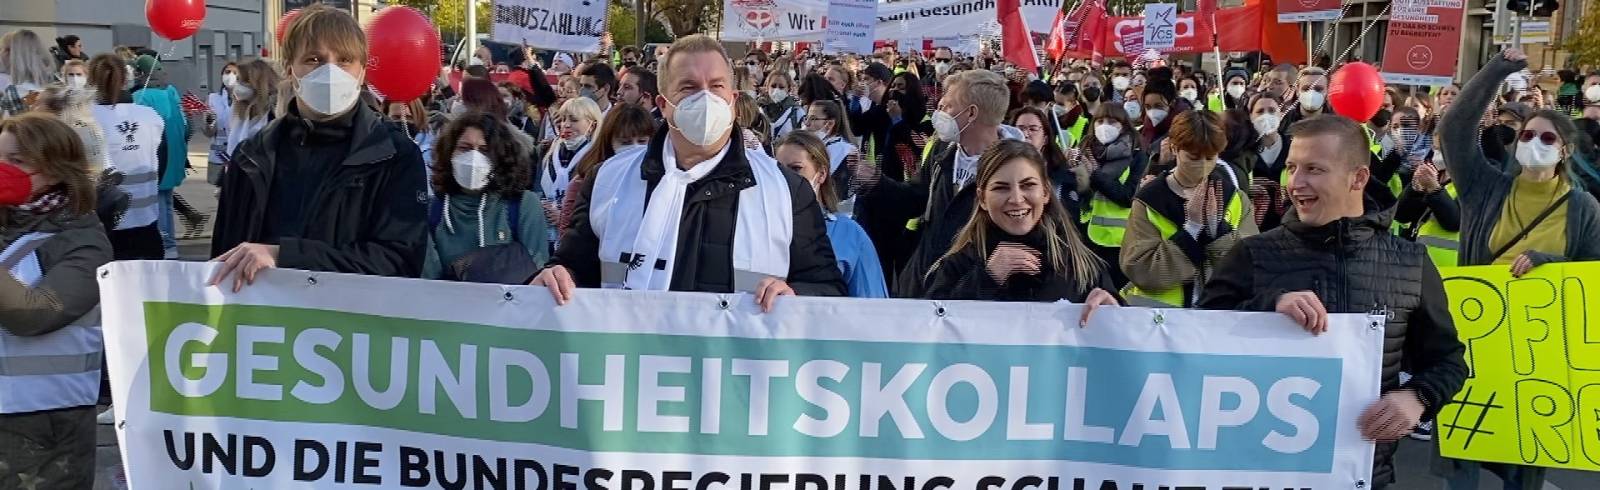 Bezirksflash: Demo gegen "Gesundheitskollaps"